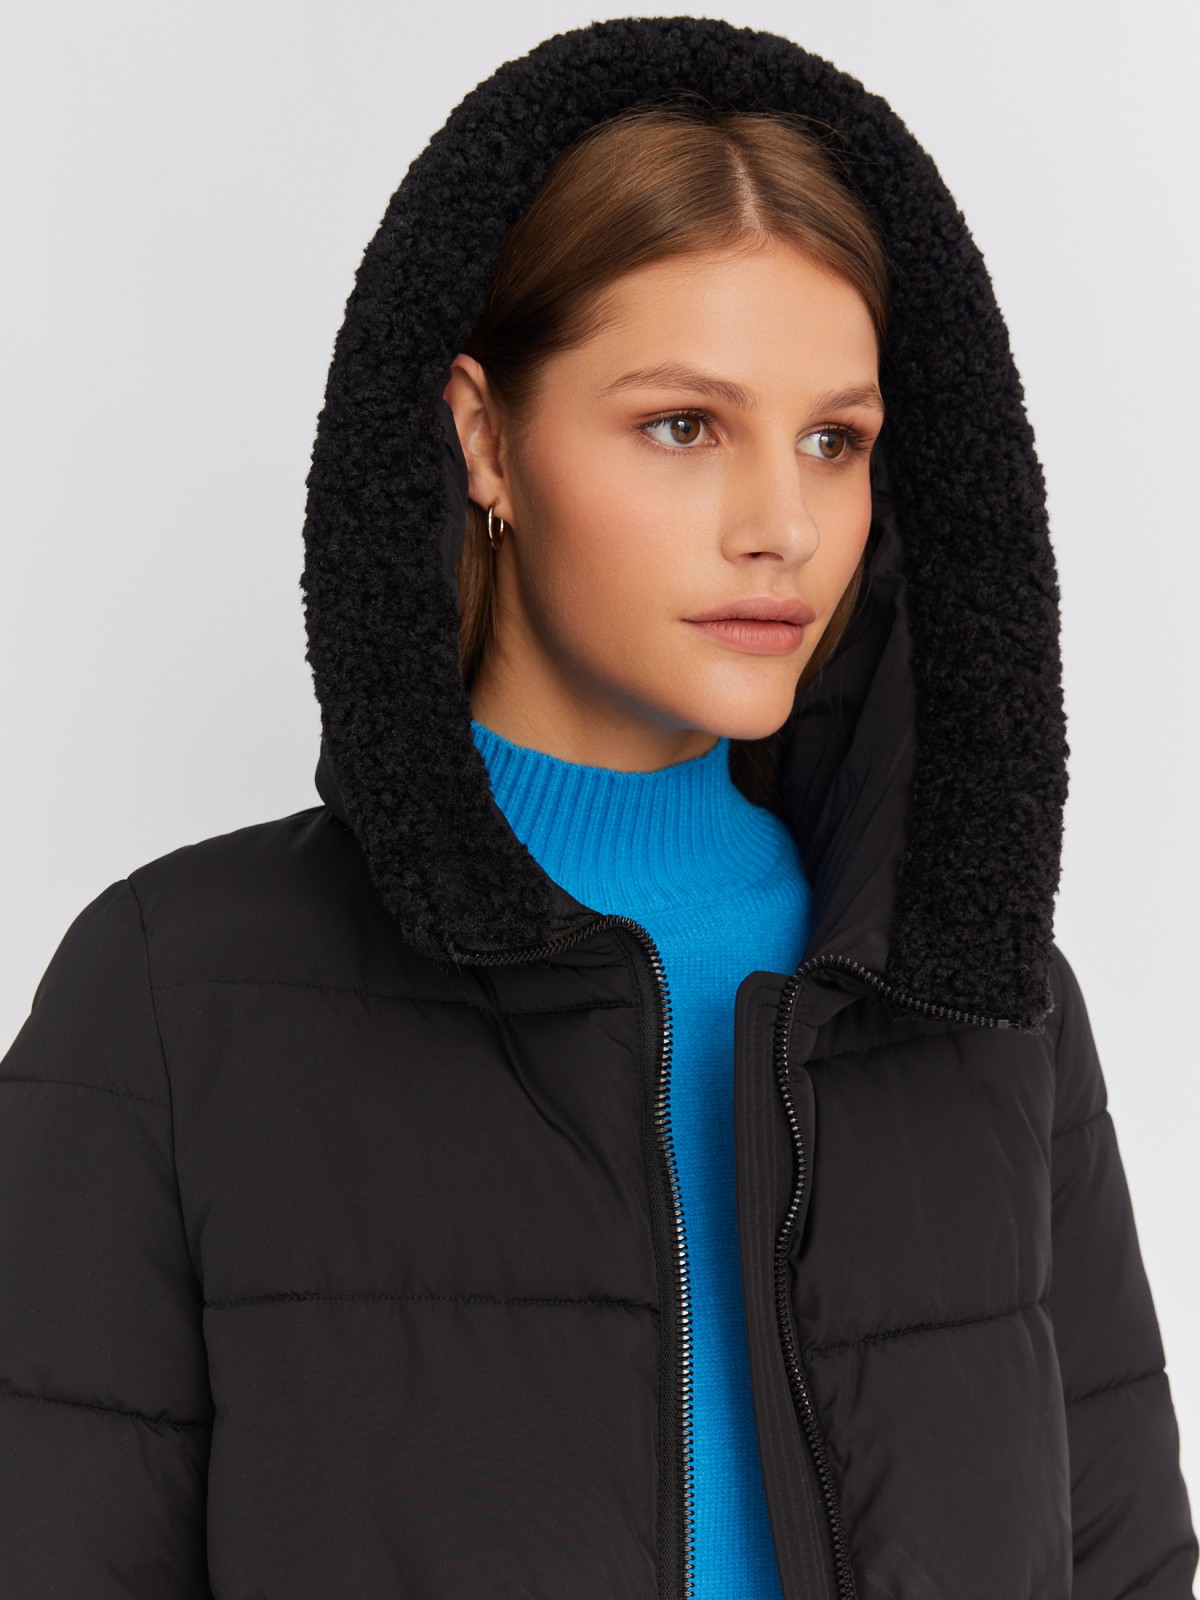 Тёплая куртка-пальто с капюшоном и отделкой из экомеха zolla 022425276044, цвет черный, размер M - фото 3